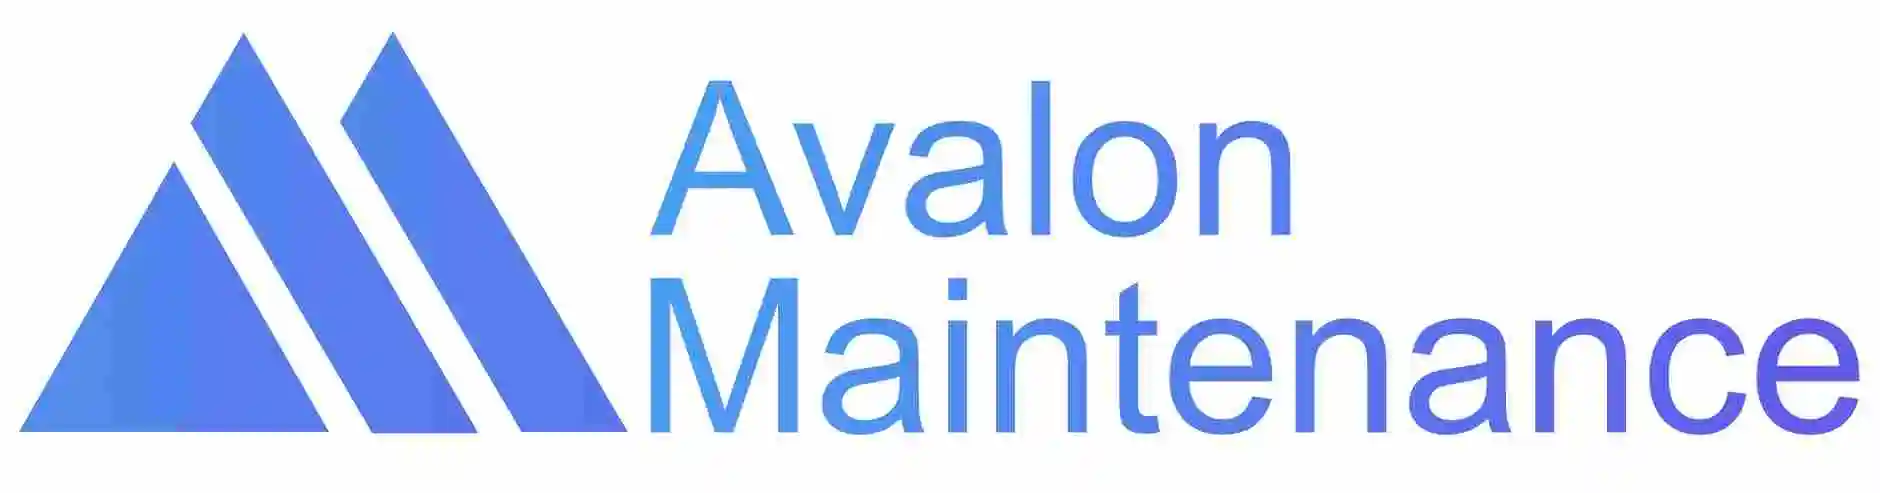 Avalon Maintenance